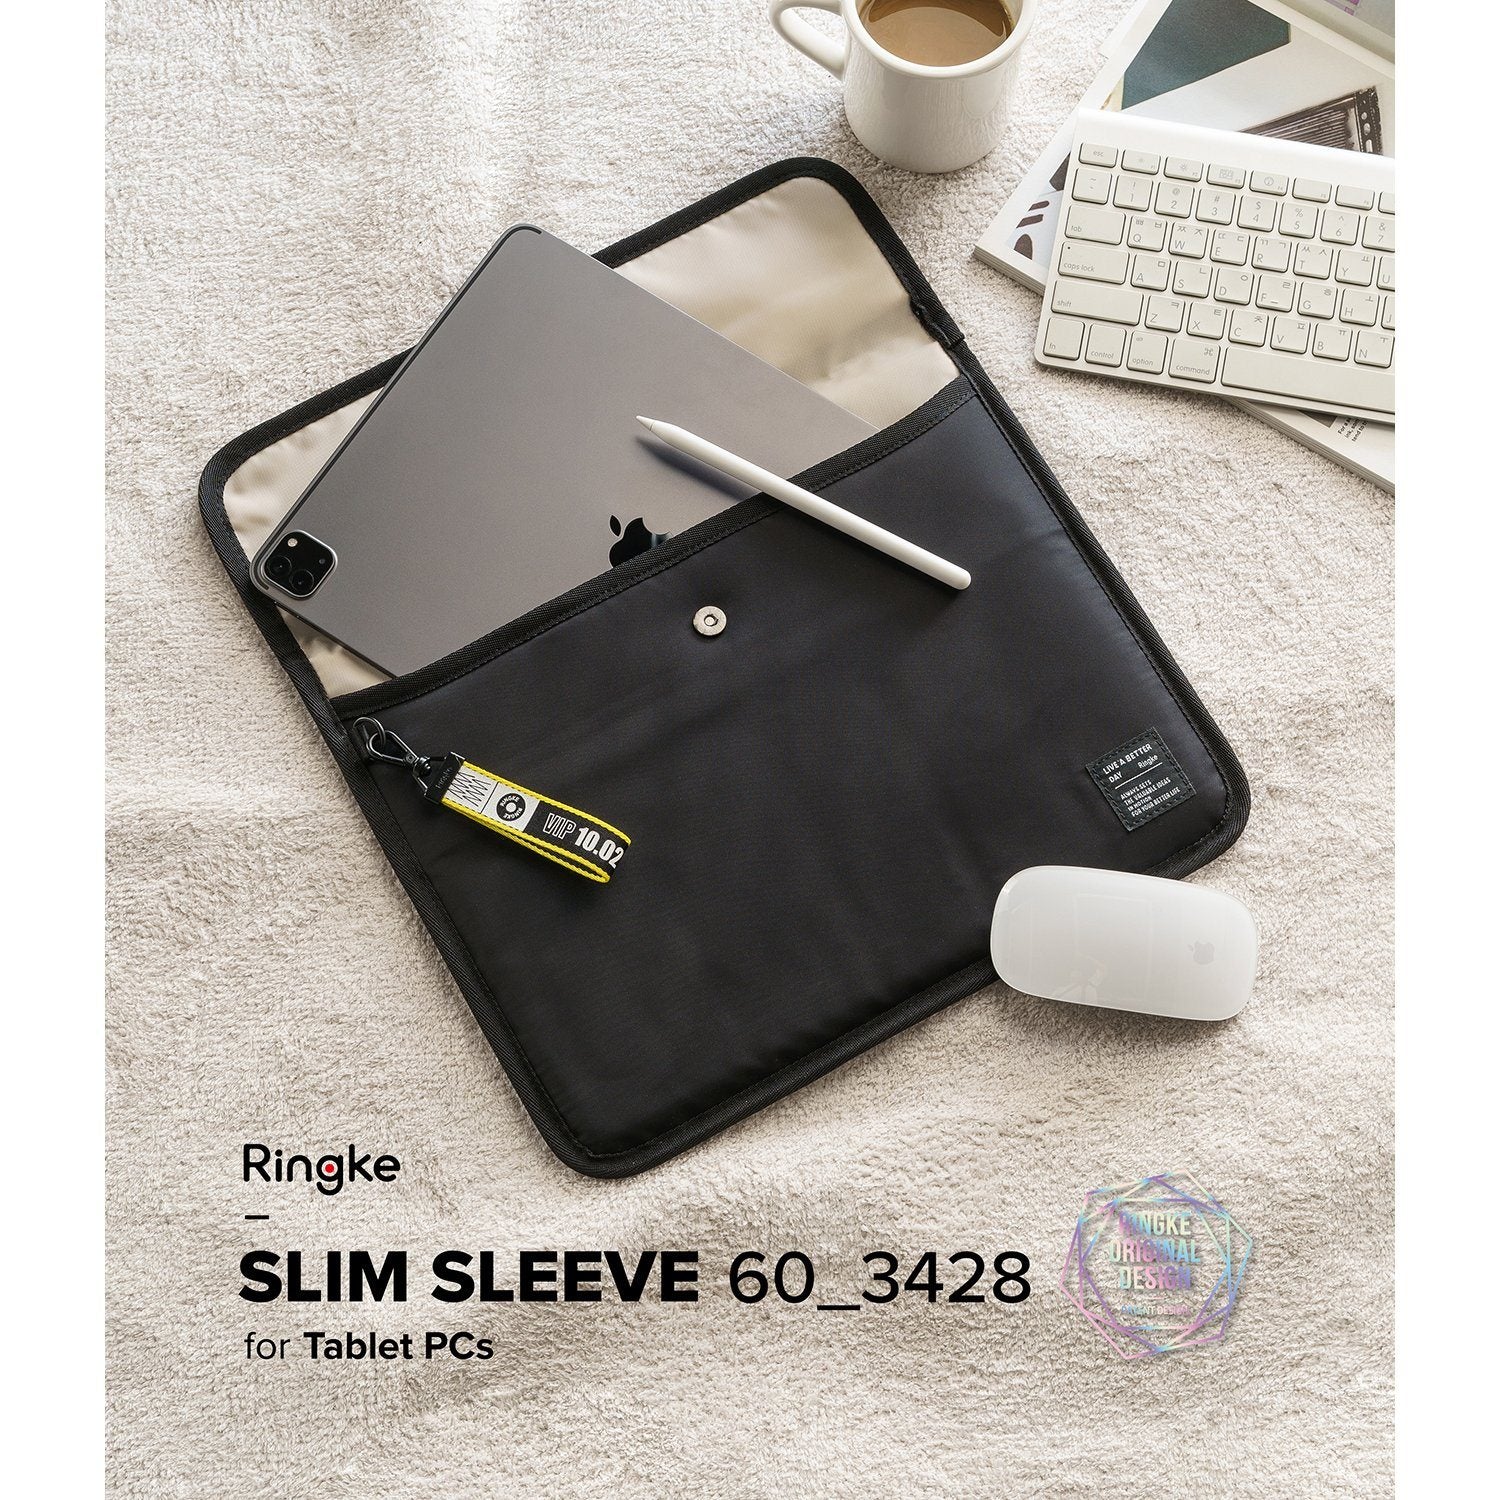 Ringke Slim Sleeve for Tablet 340mm x 280mm Default Ringke 